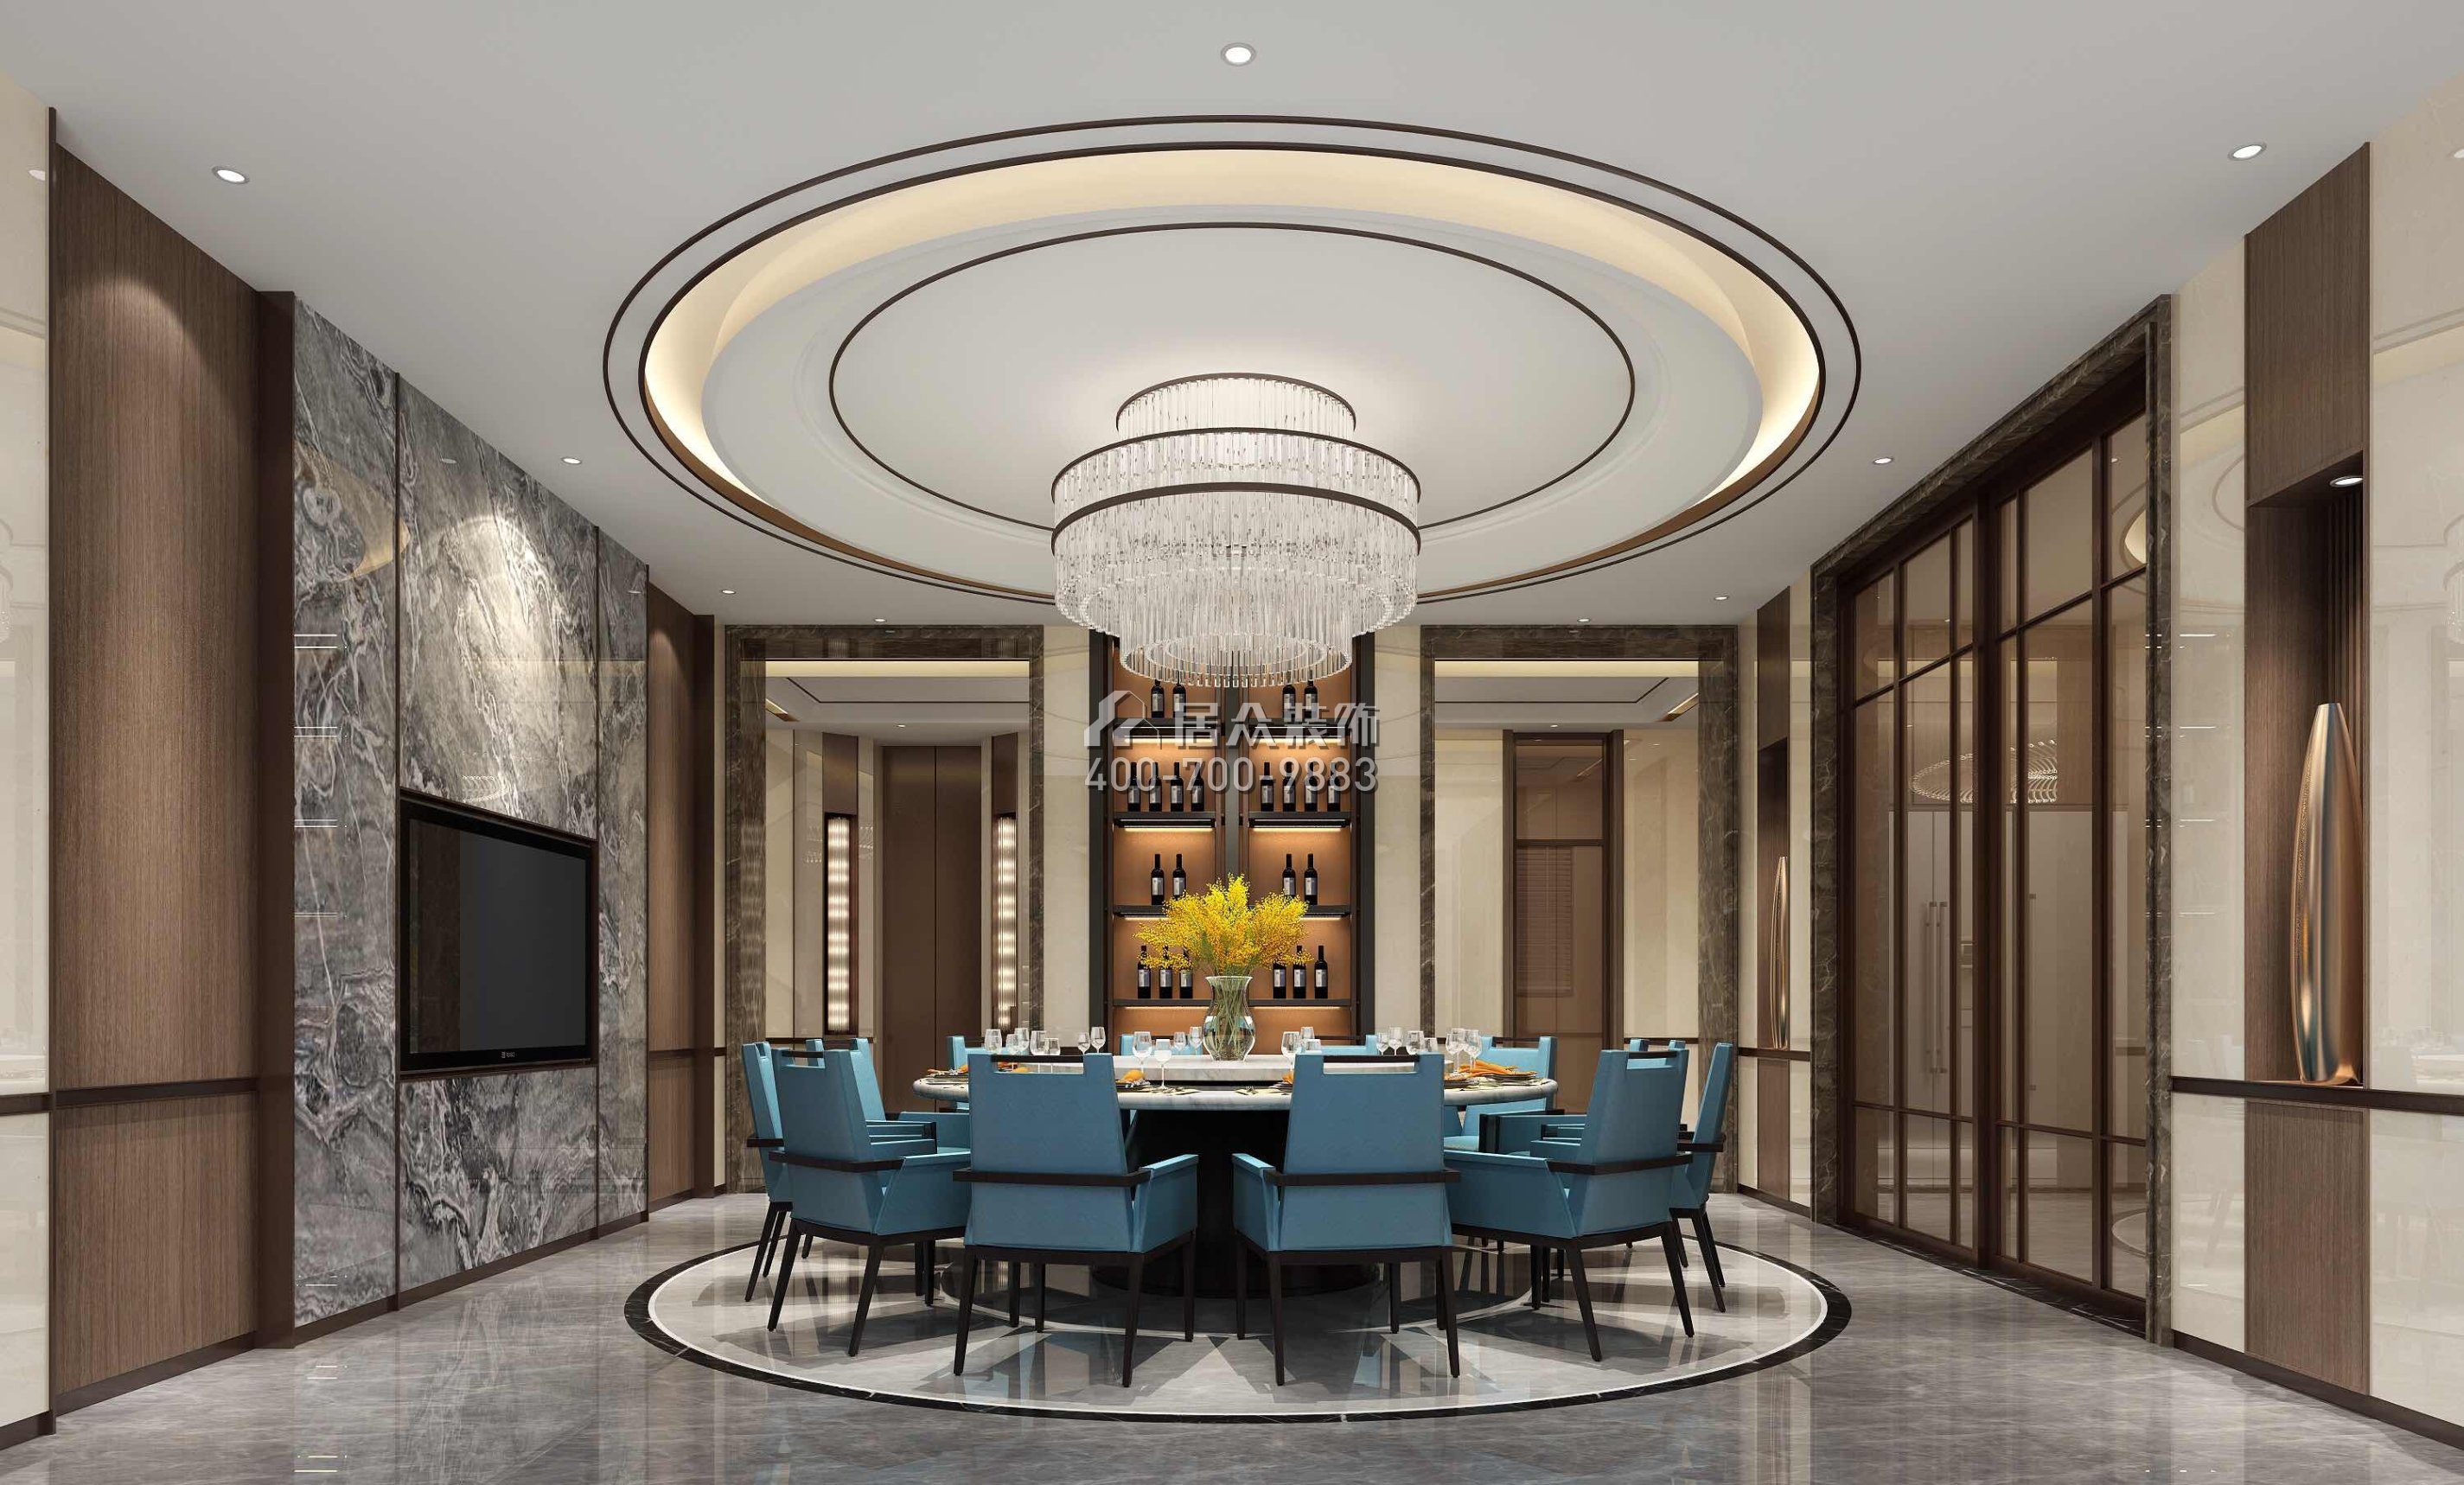 新世纪颐龙湾1000平方米中式风格别墅户型餐厅装修效果图